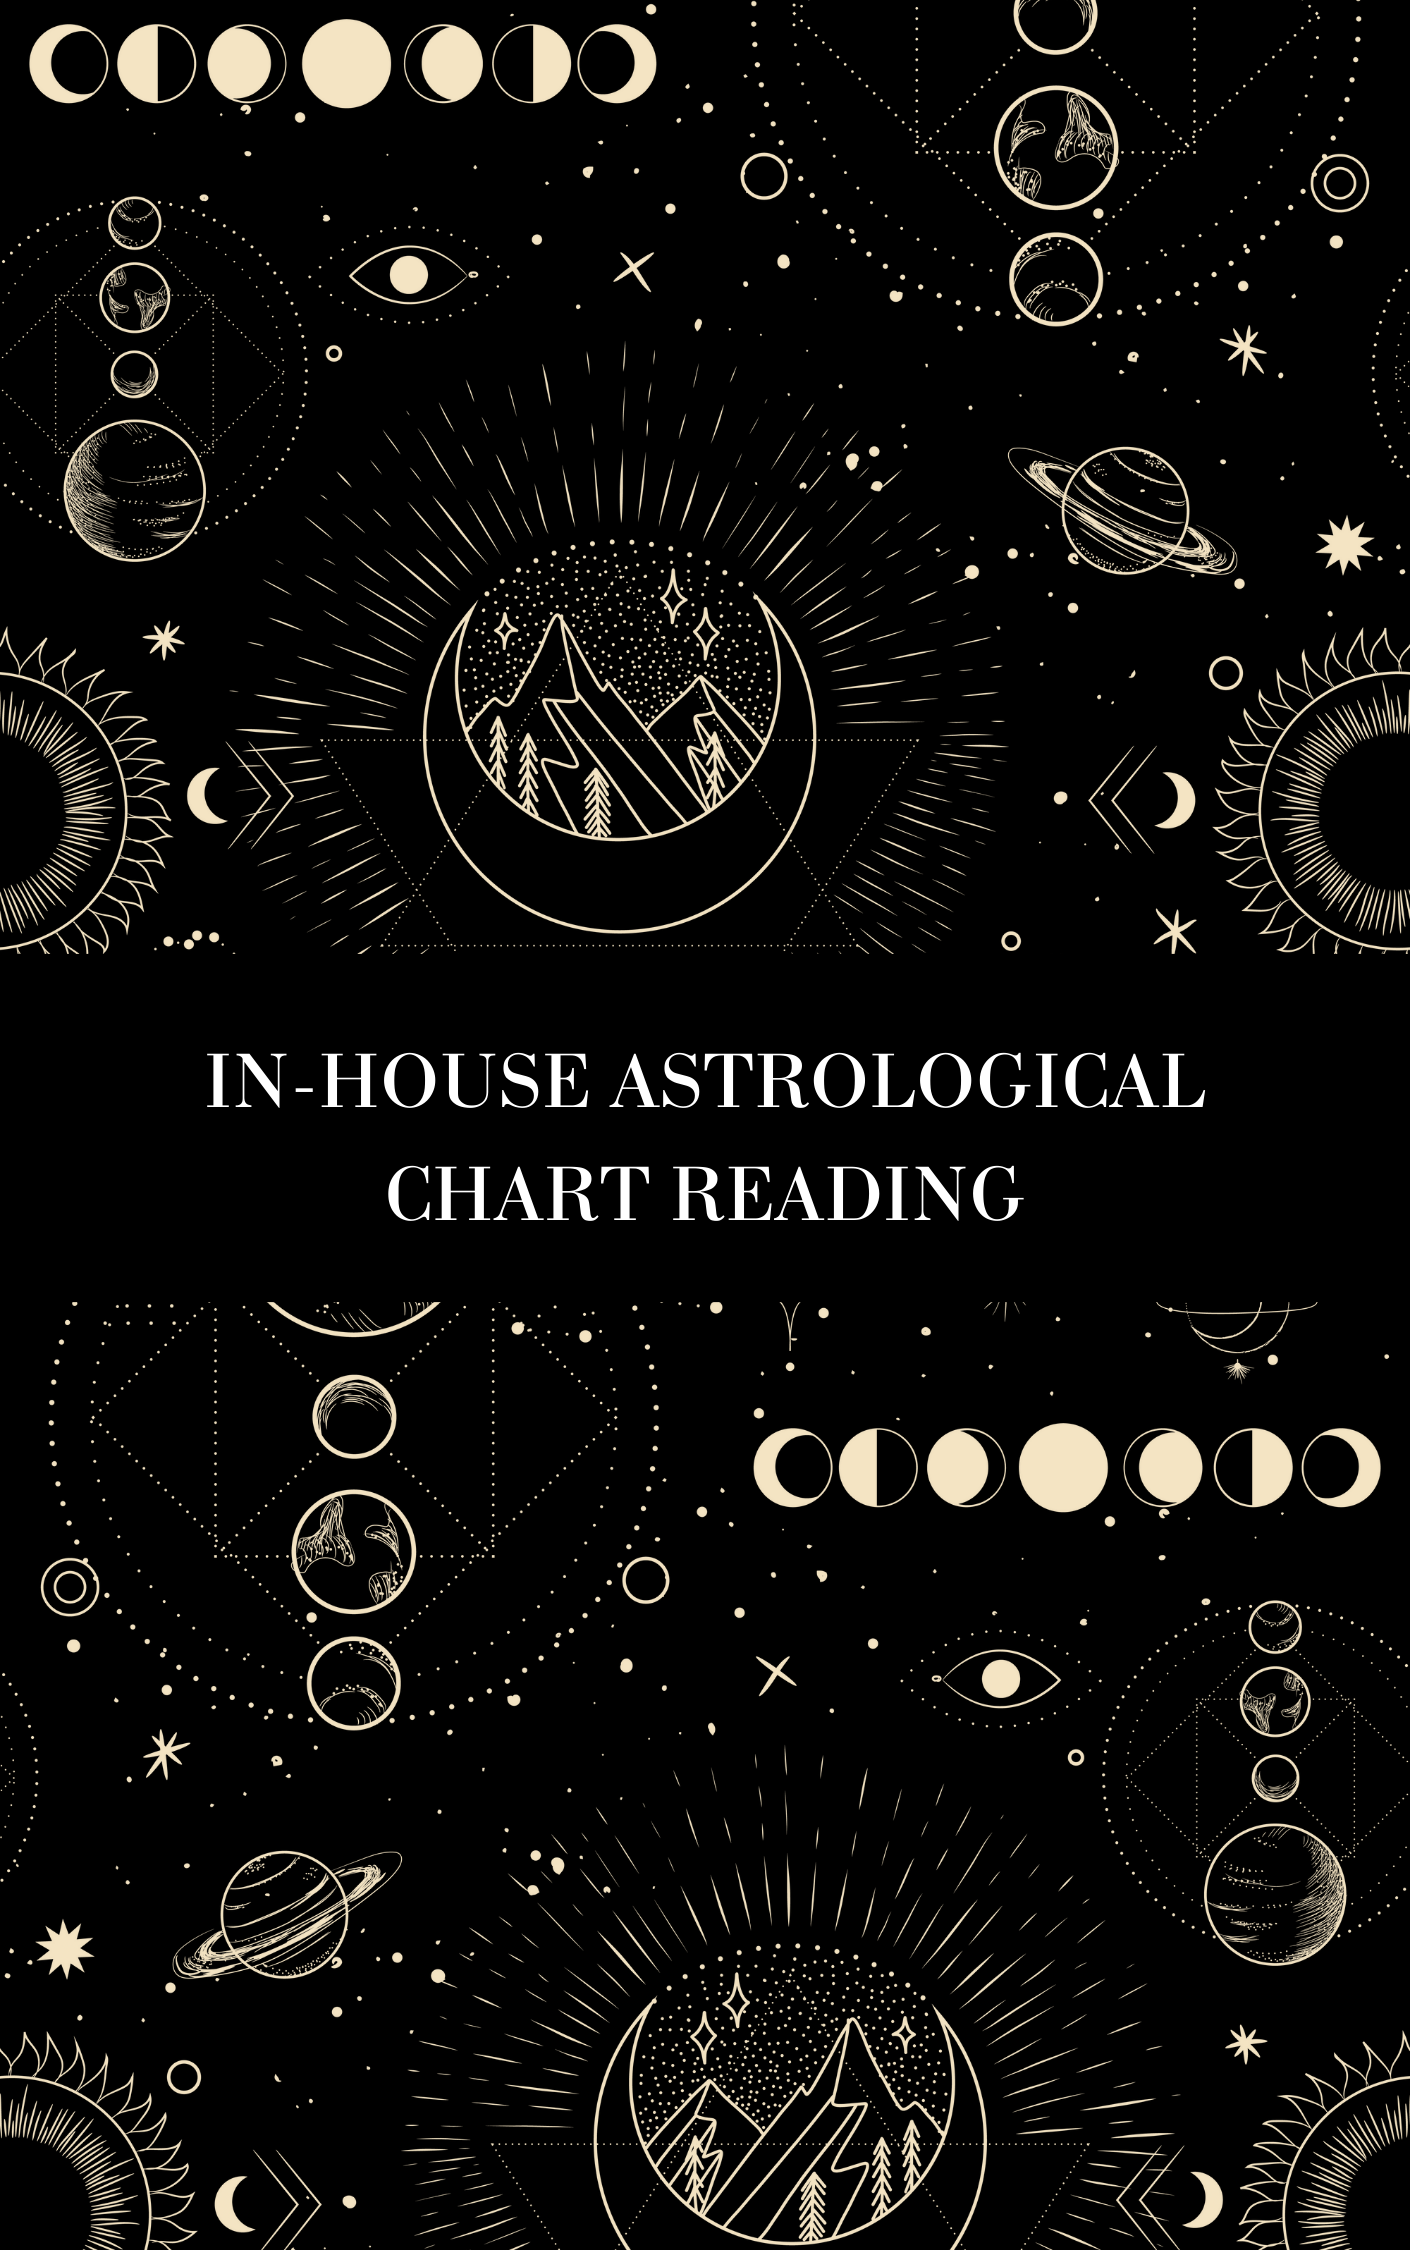 Hausinterne astrologische Horoskoplesung durch Inbaal Honigman